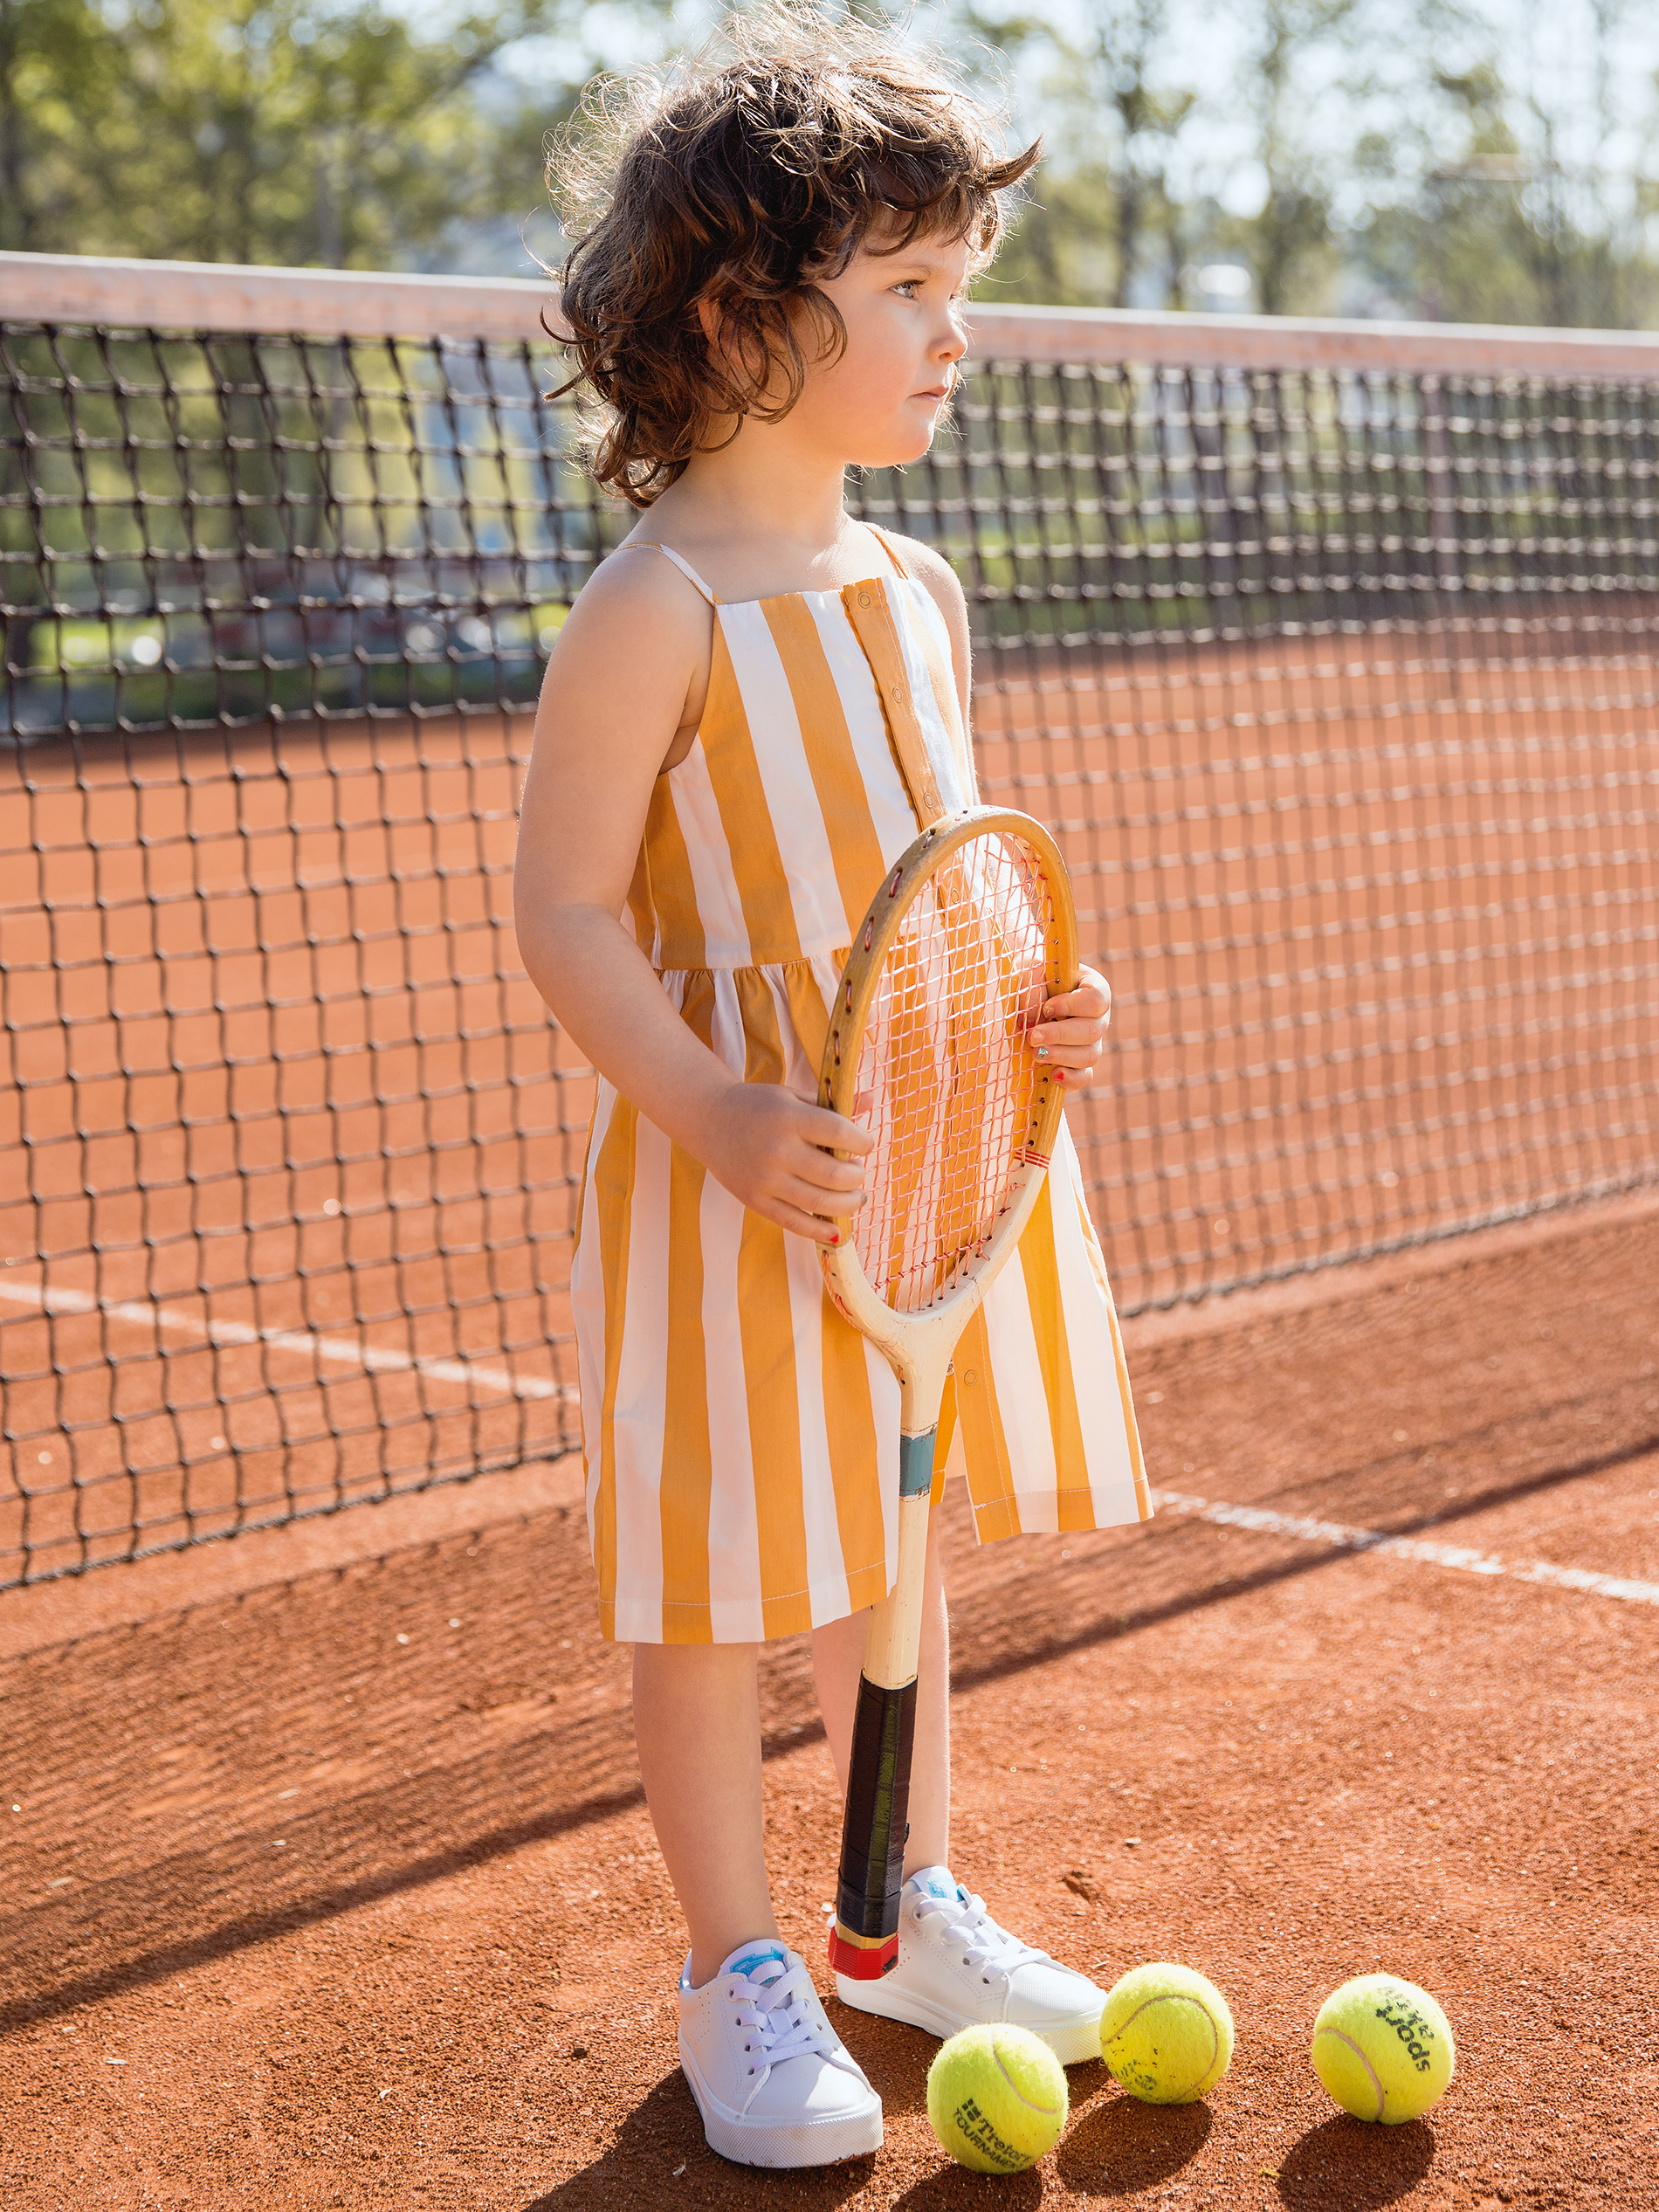 Kind auf einem Tennisplatz